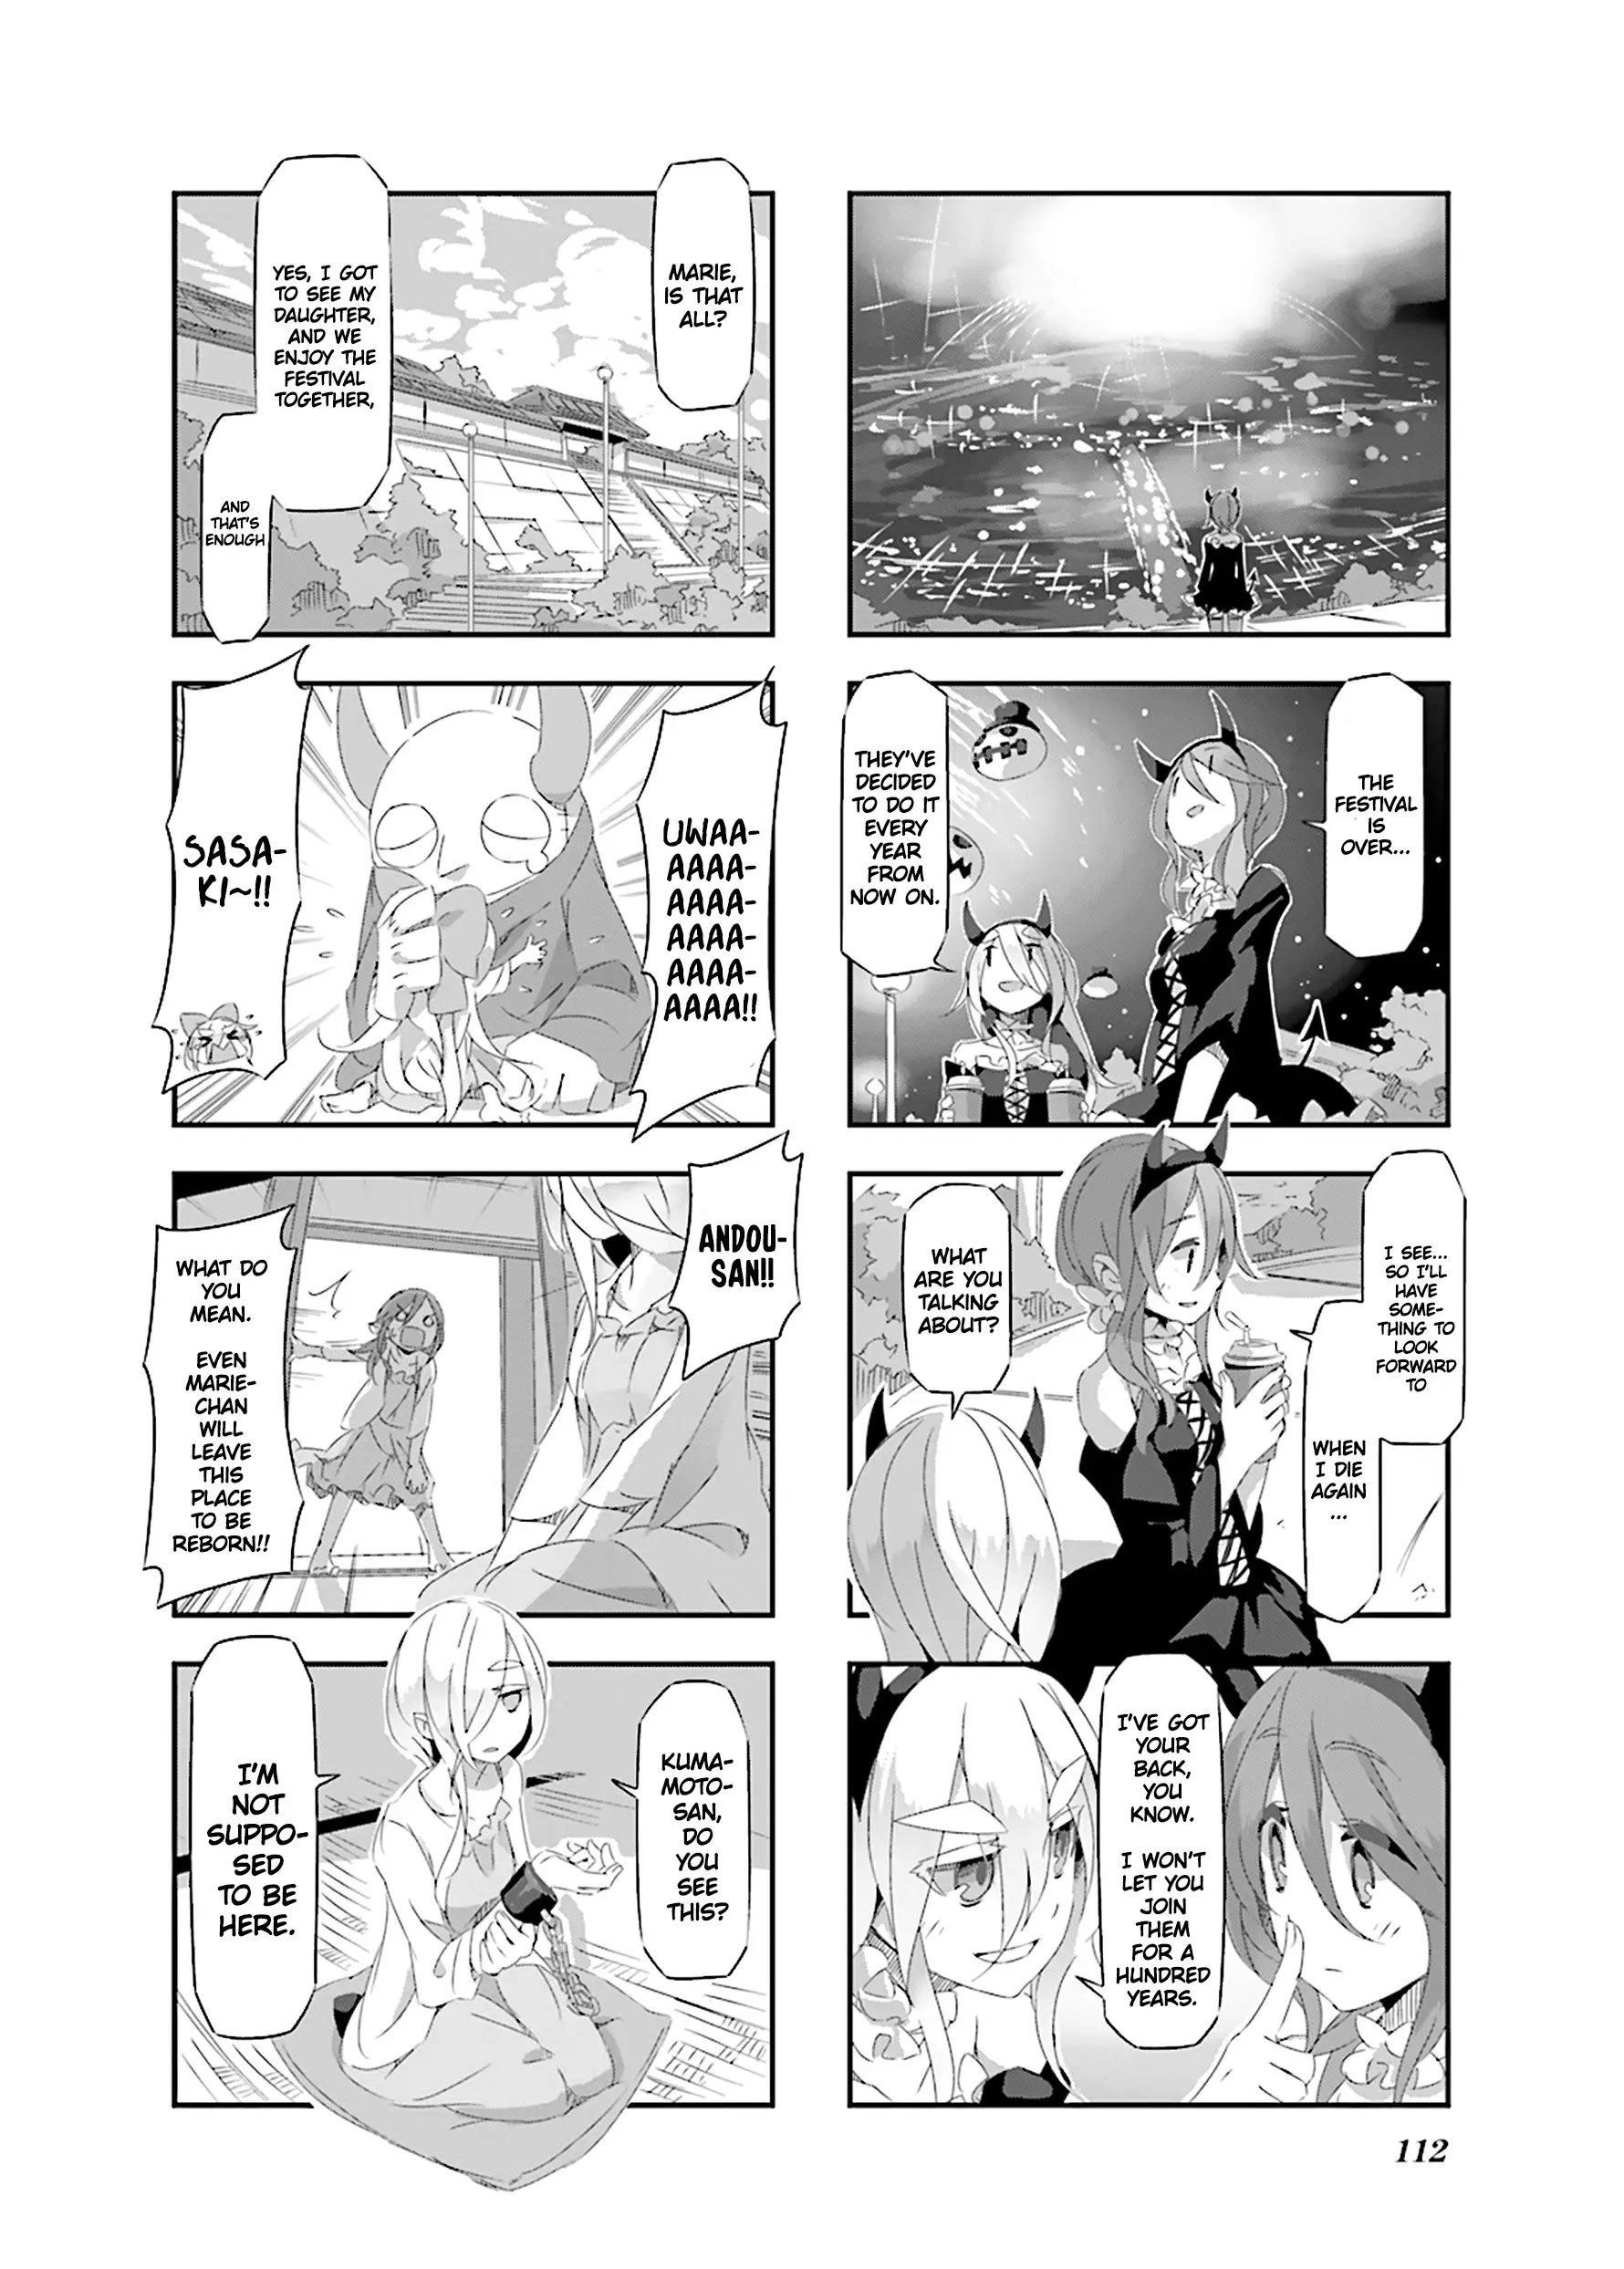 Shirokuma To Fumeikyoku - 22 page 6-20c36df5